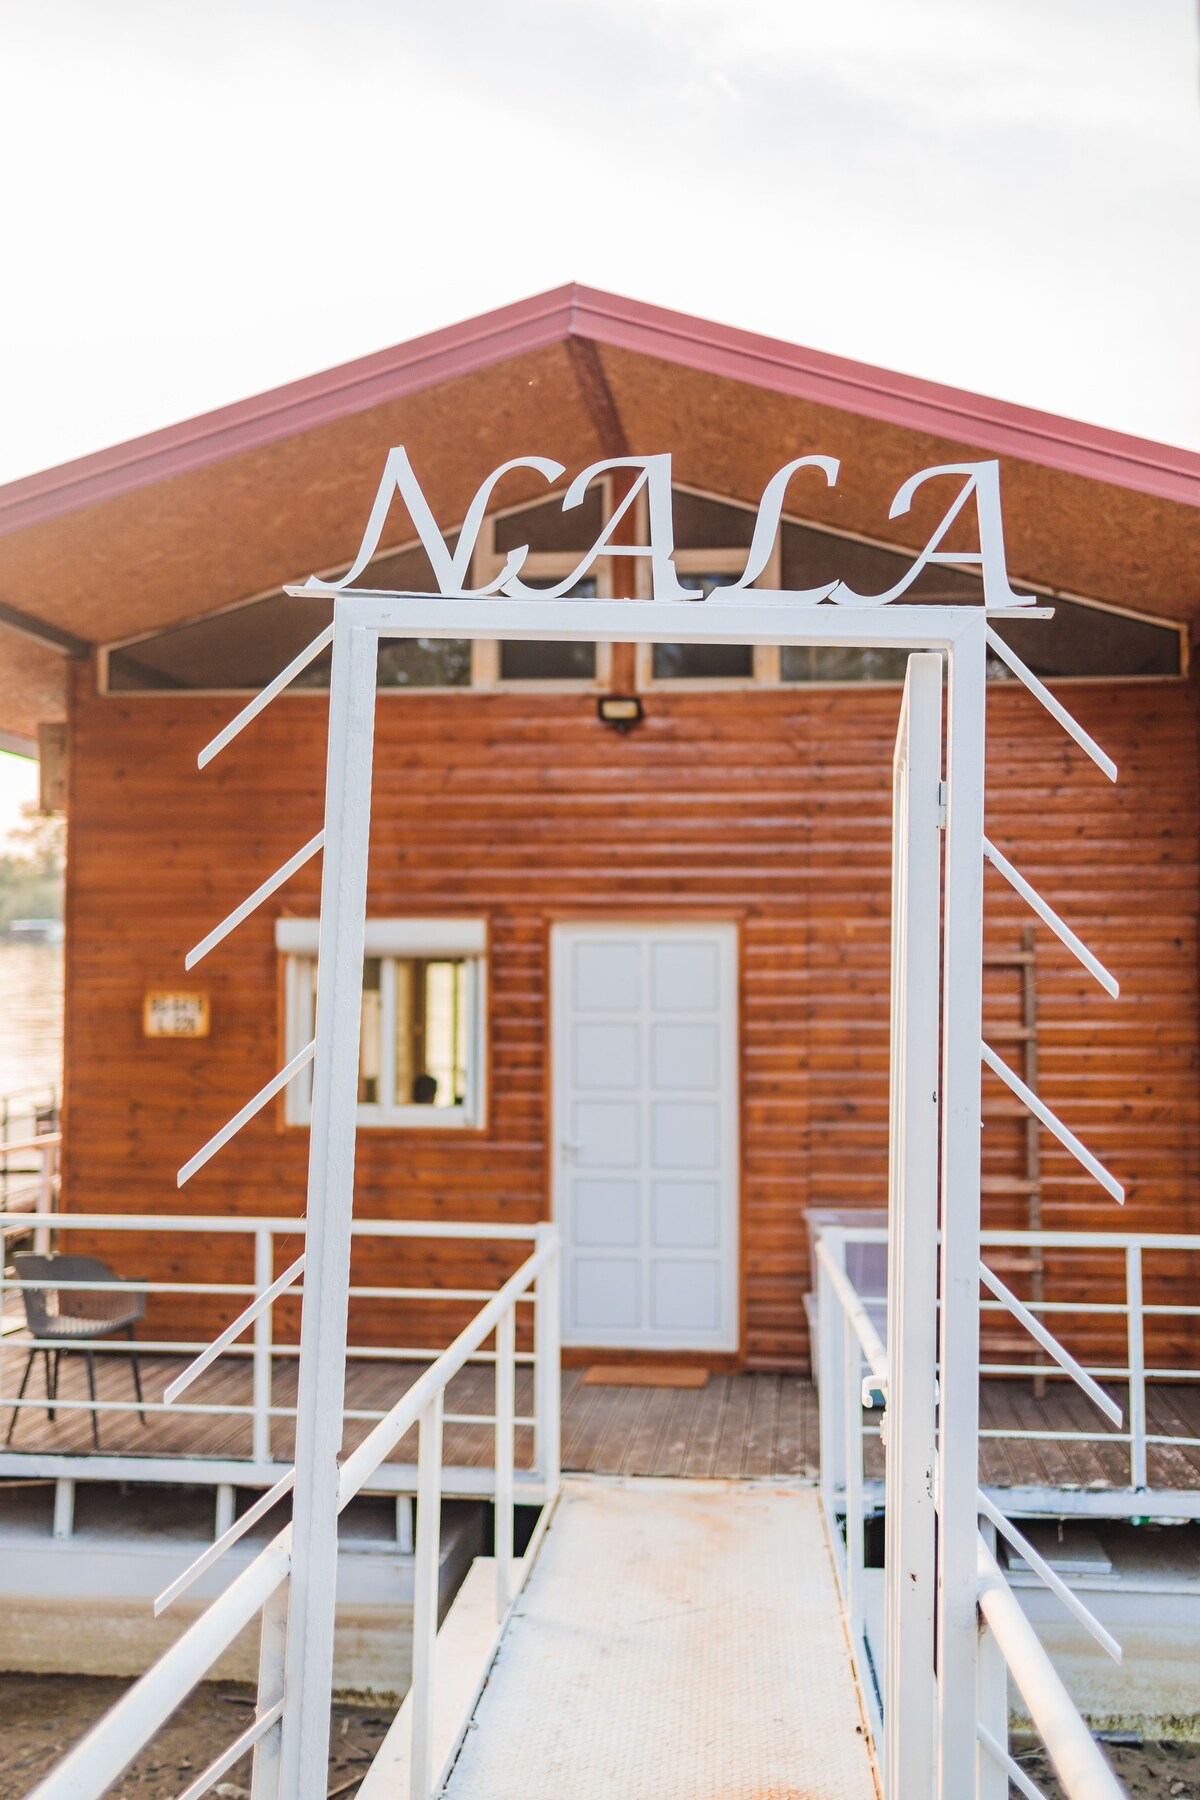 The Large Boathouse "NALA"